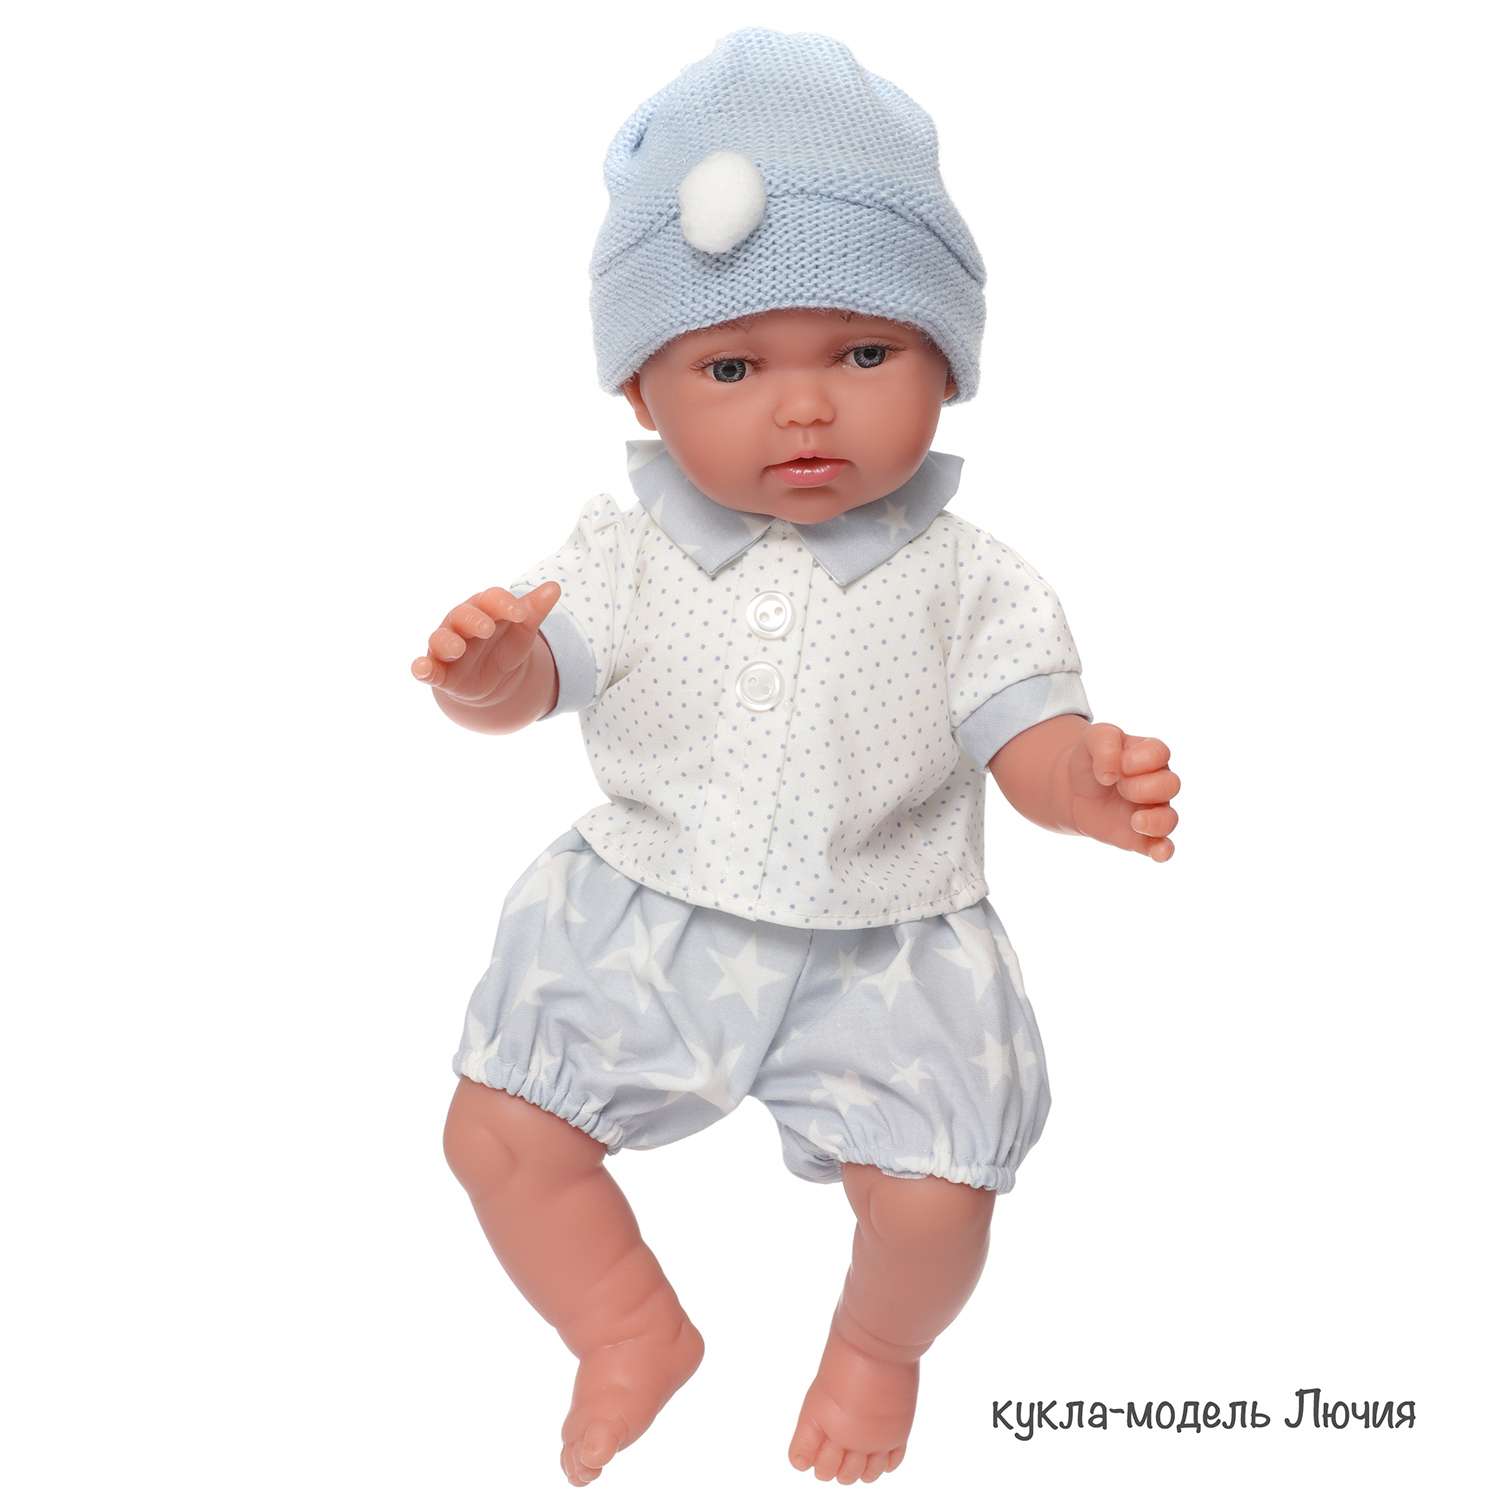 Одежда для кукол и пупсов Antonio Juan 26 см белая кофта шапка штанишки 91026-3 - фото 4